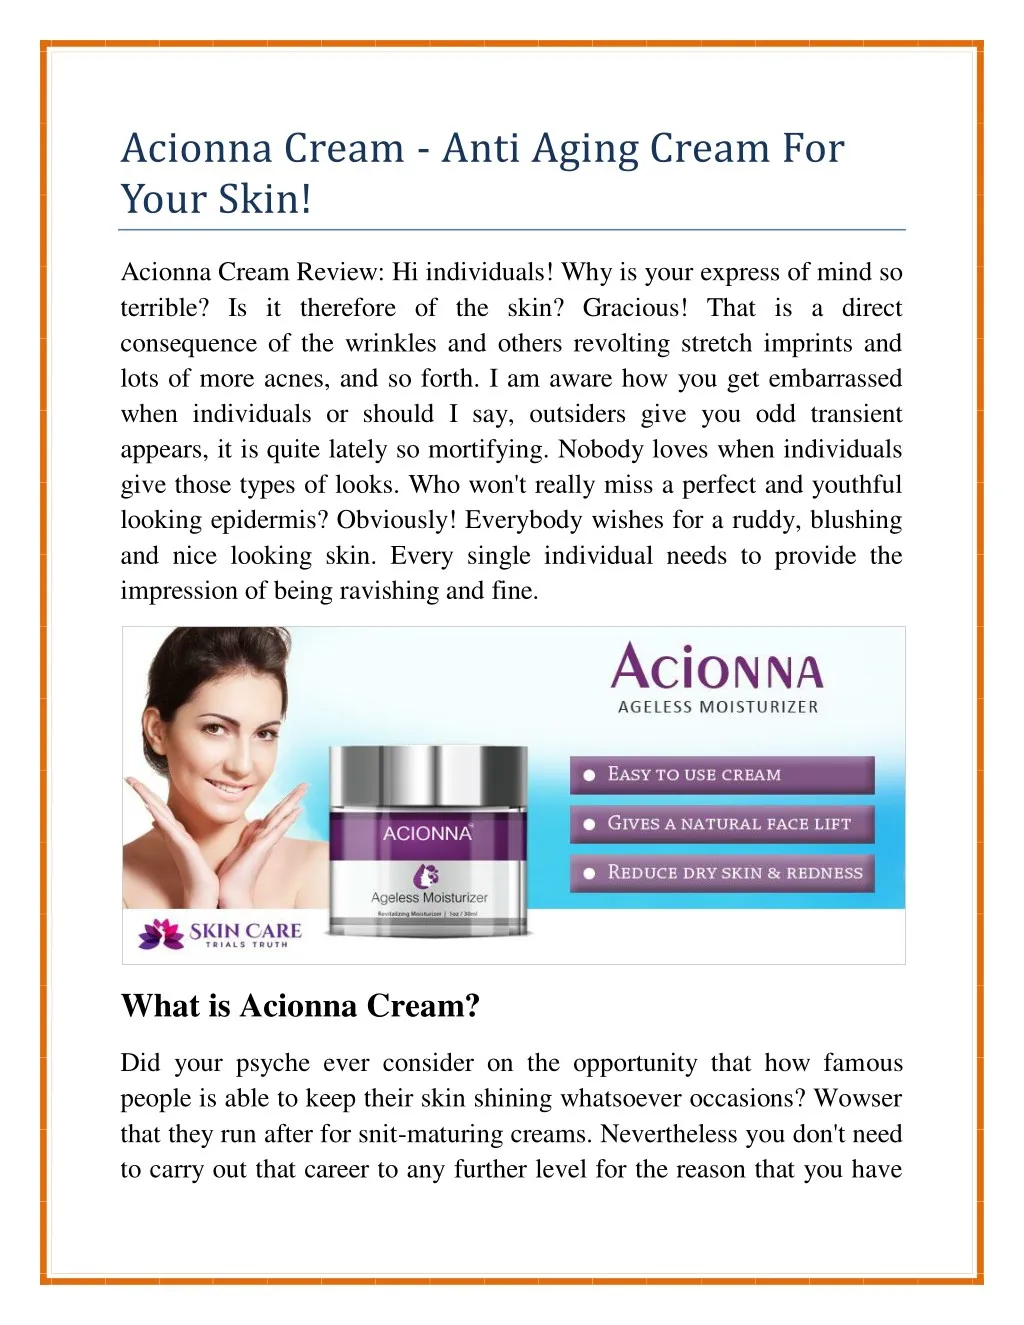 acionna cream anti aging cream for your skin